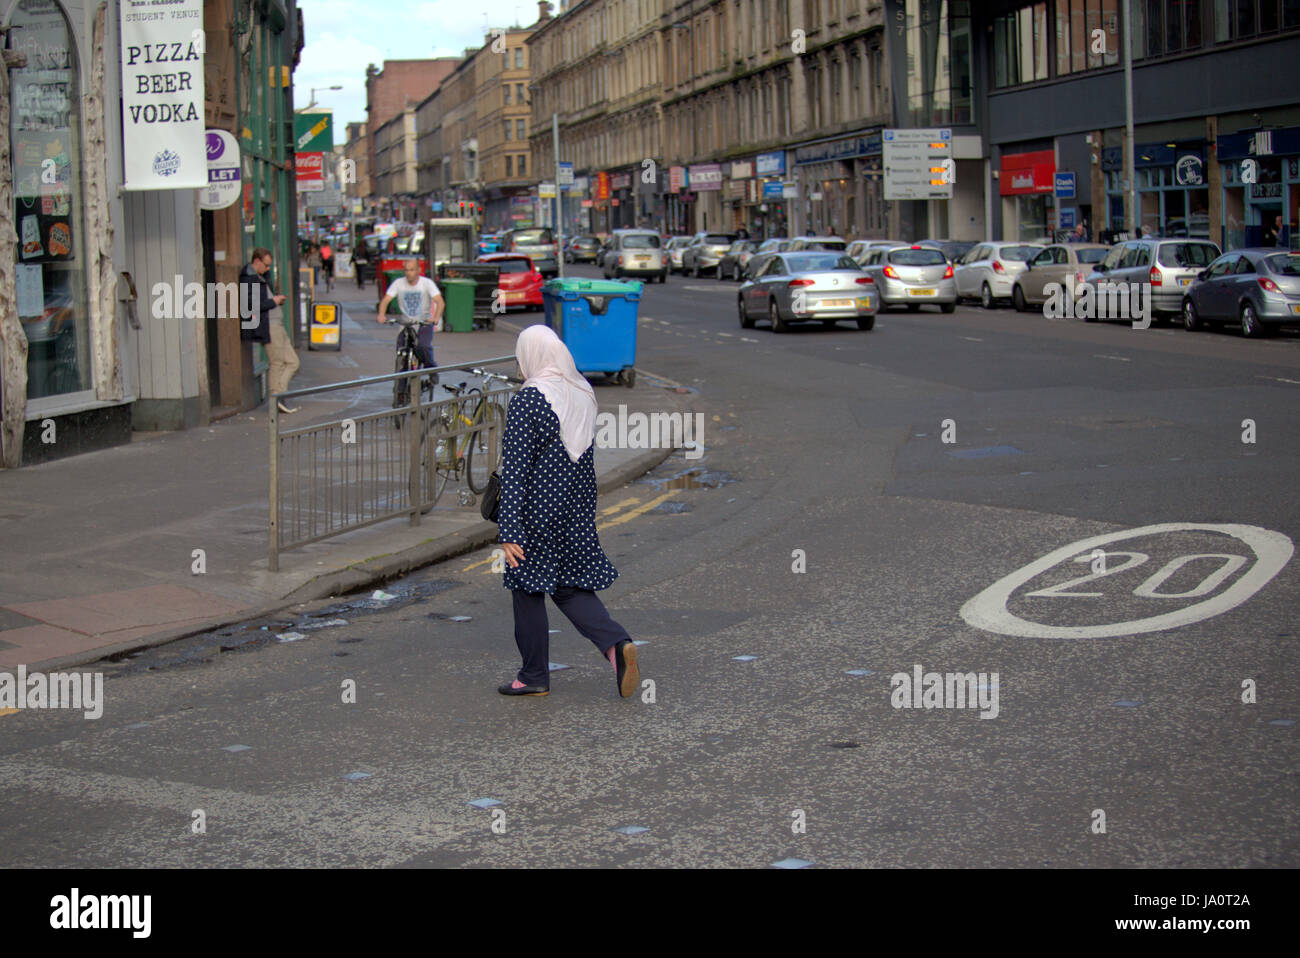 Hijab-Schal tragen Muslim an der britischen street Stockfoto